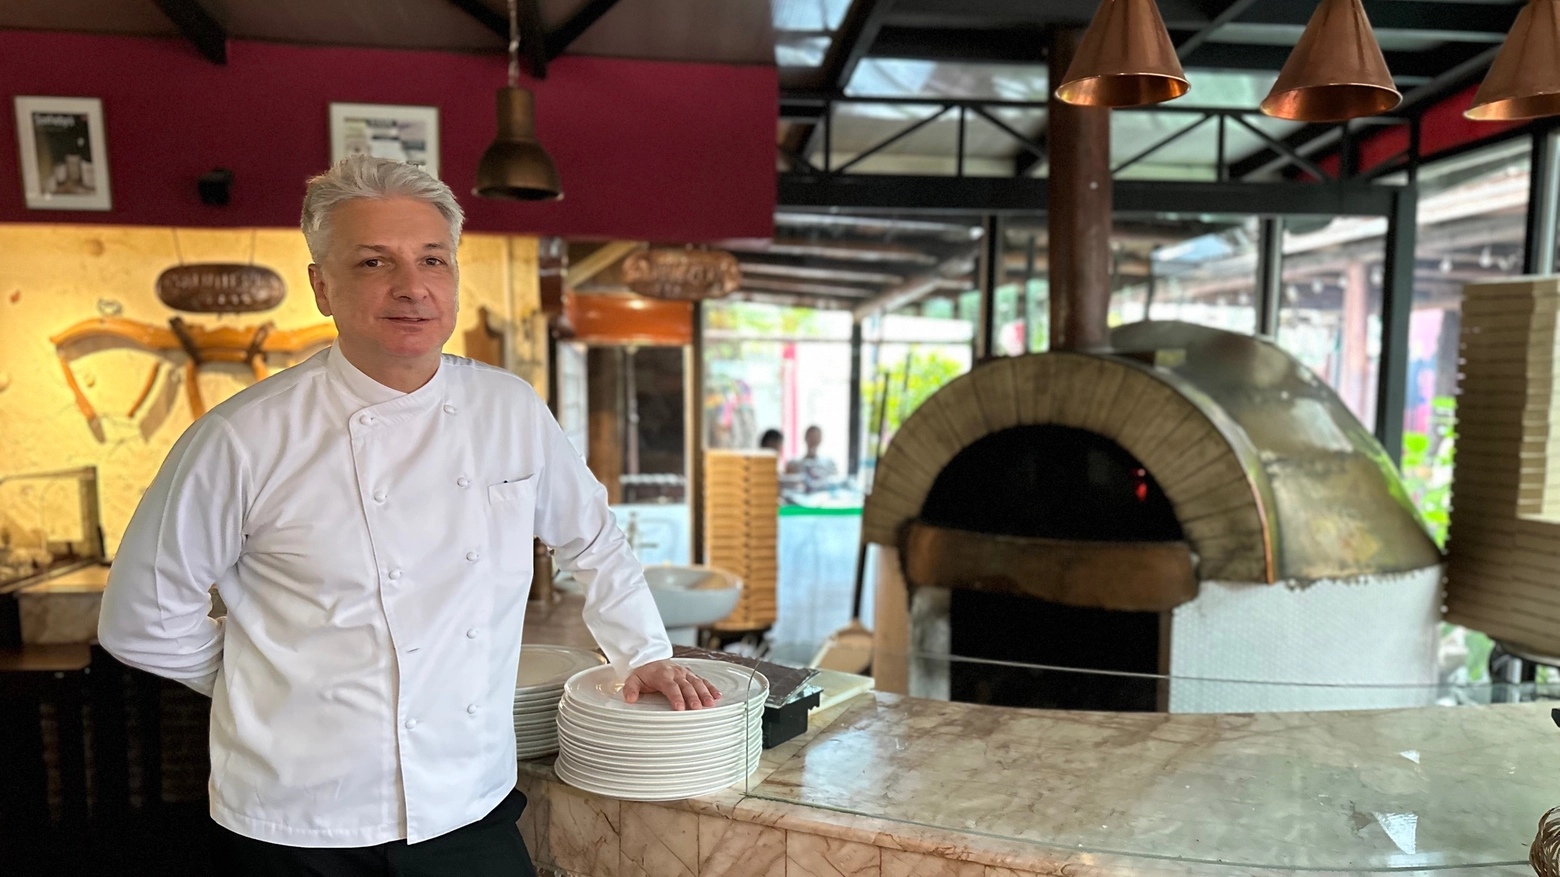 Marco Ravasio, chef de "Il Bolognese" ristorante italiano a Bangkok